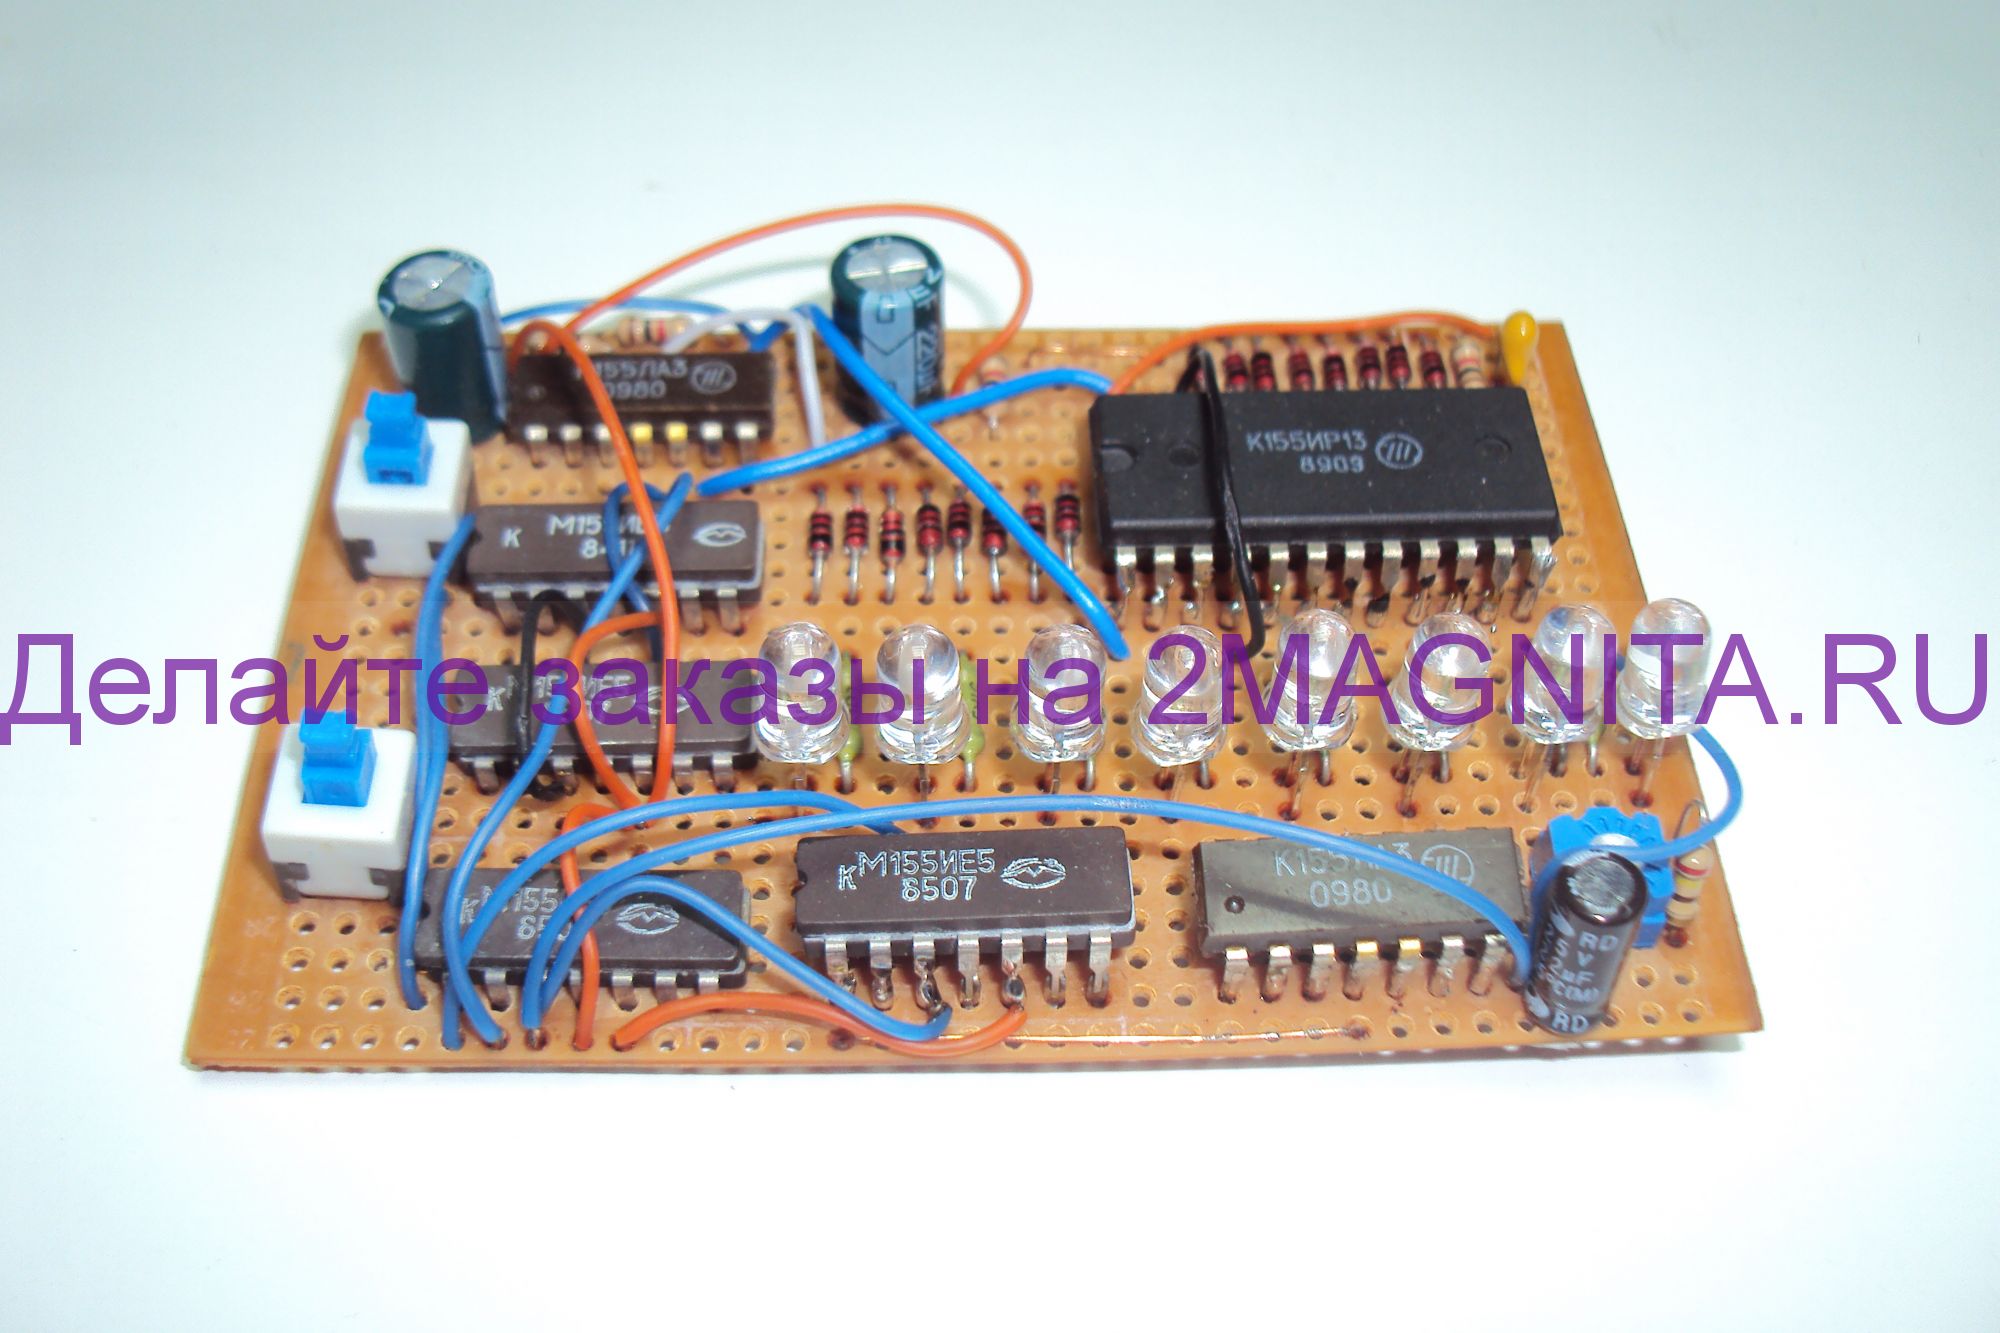 Светодиодная сосулька на микроконтроллере: ATtiny13 и 20 светодиодов